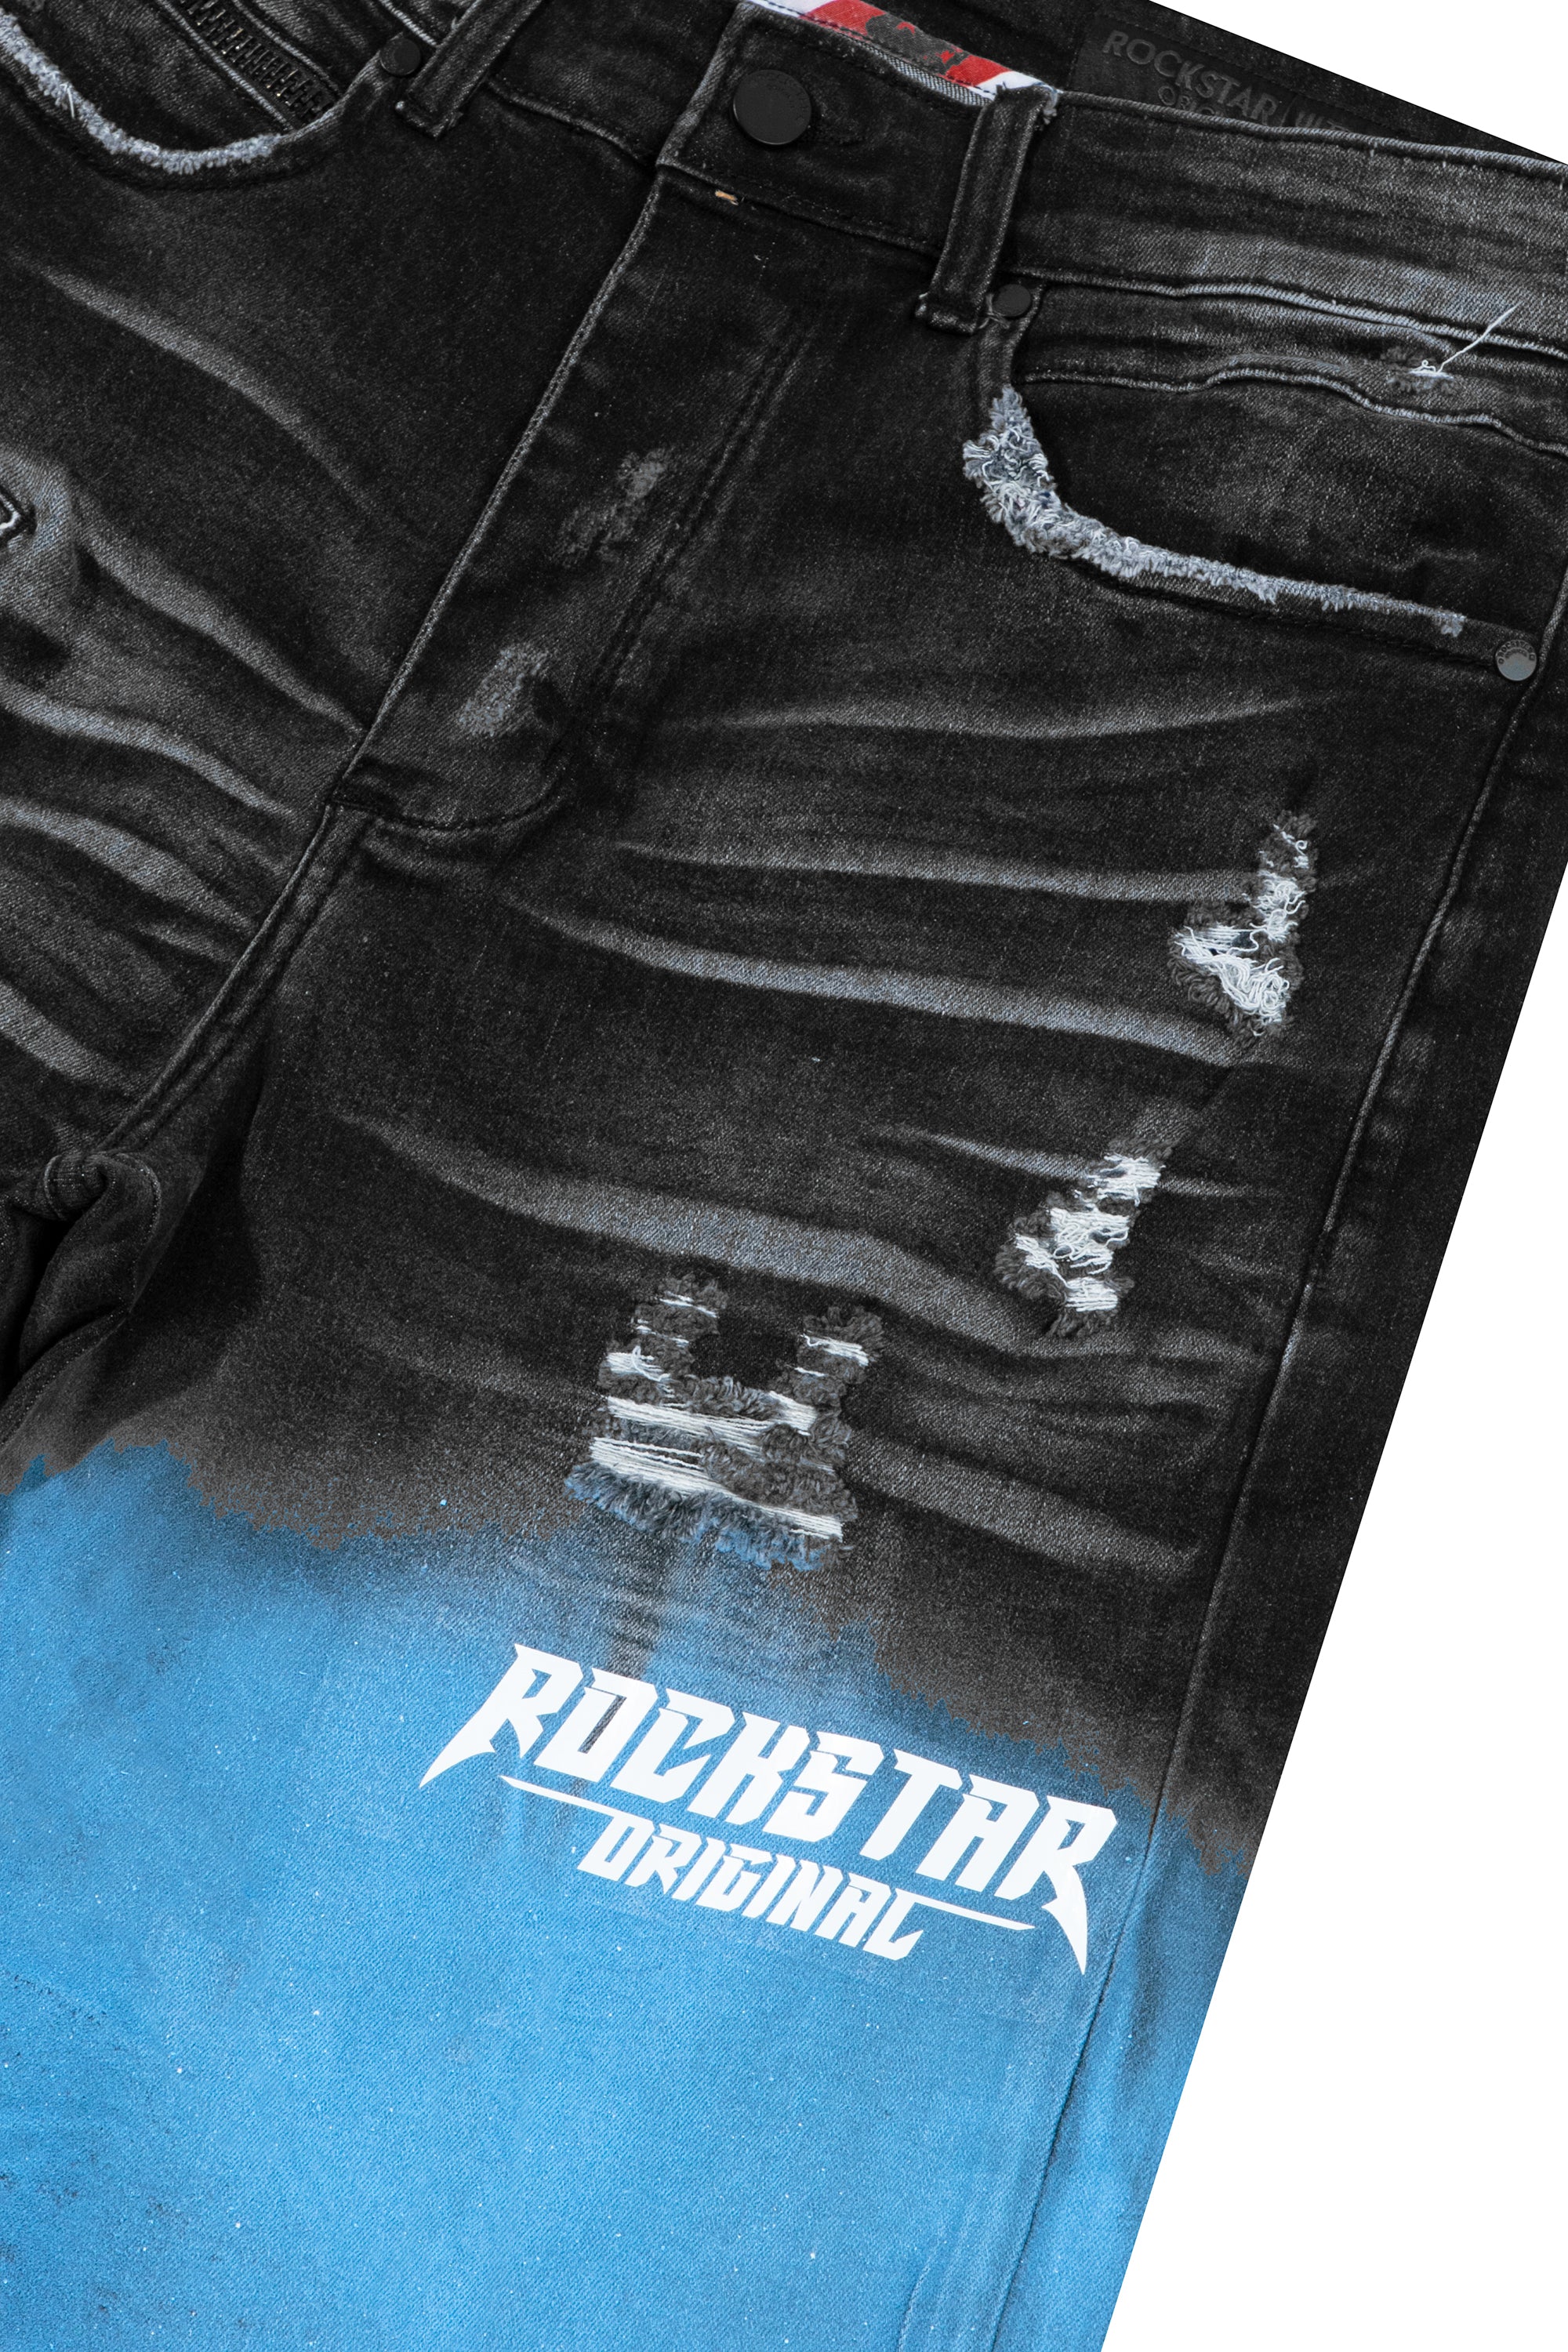 Rockstar jeans